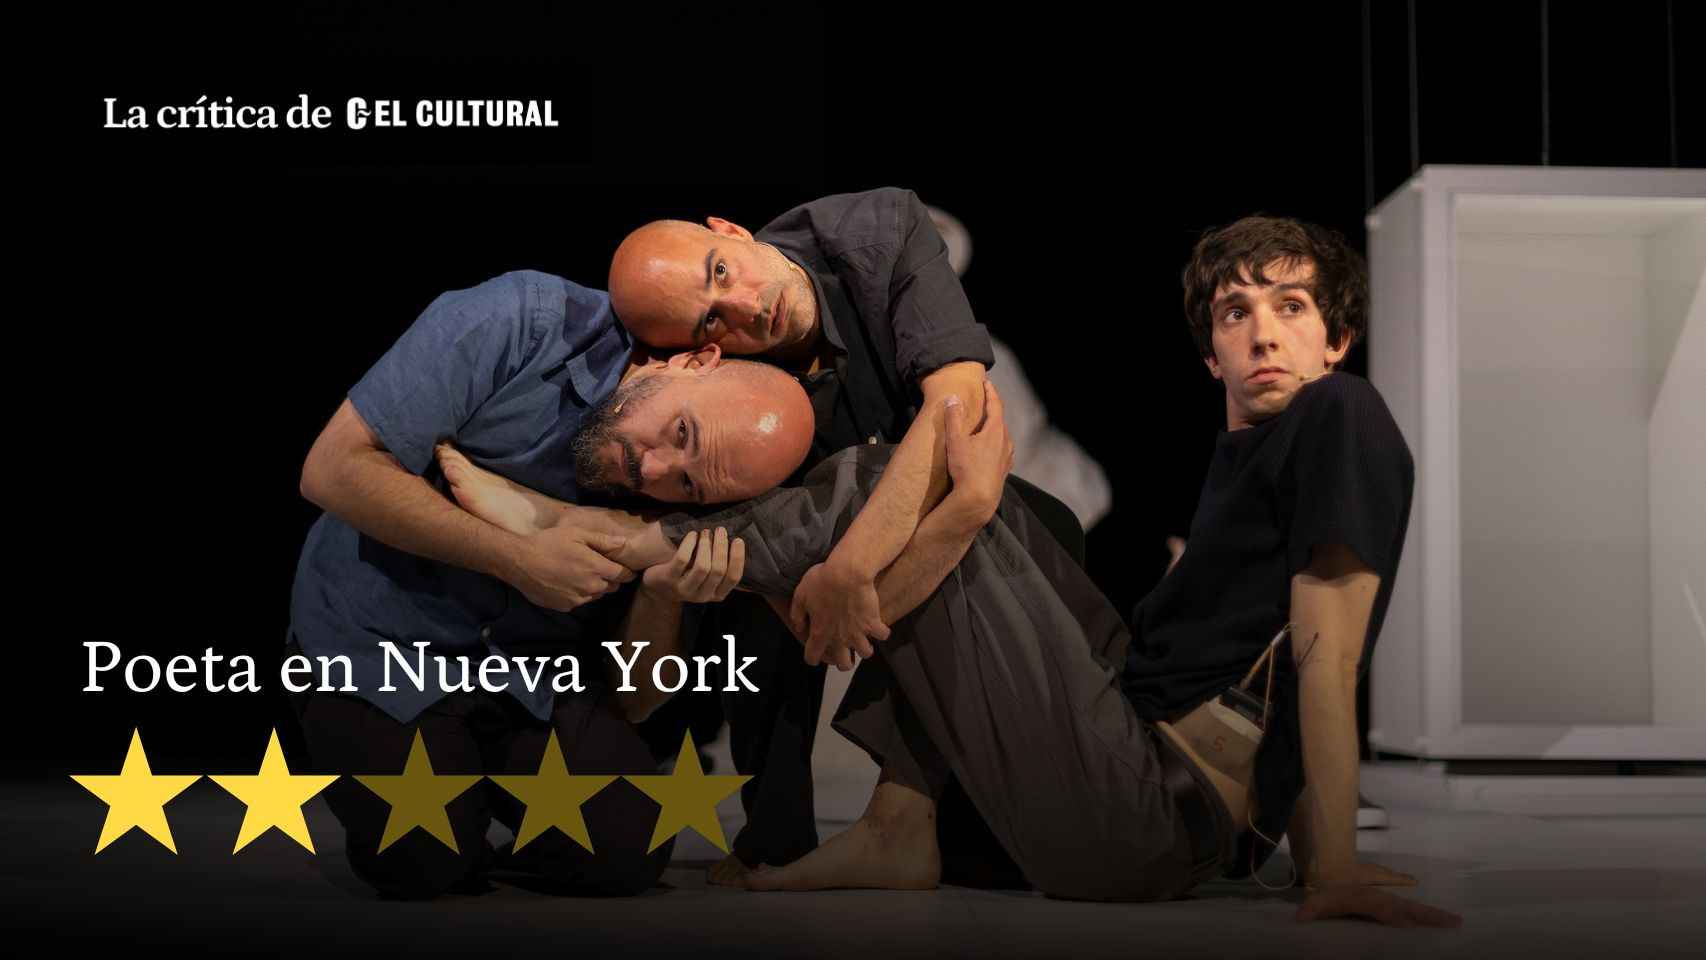 Un momento de 'Poeta en Nueva York', obra teatral dirigida por Carlos Marquerie